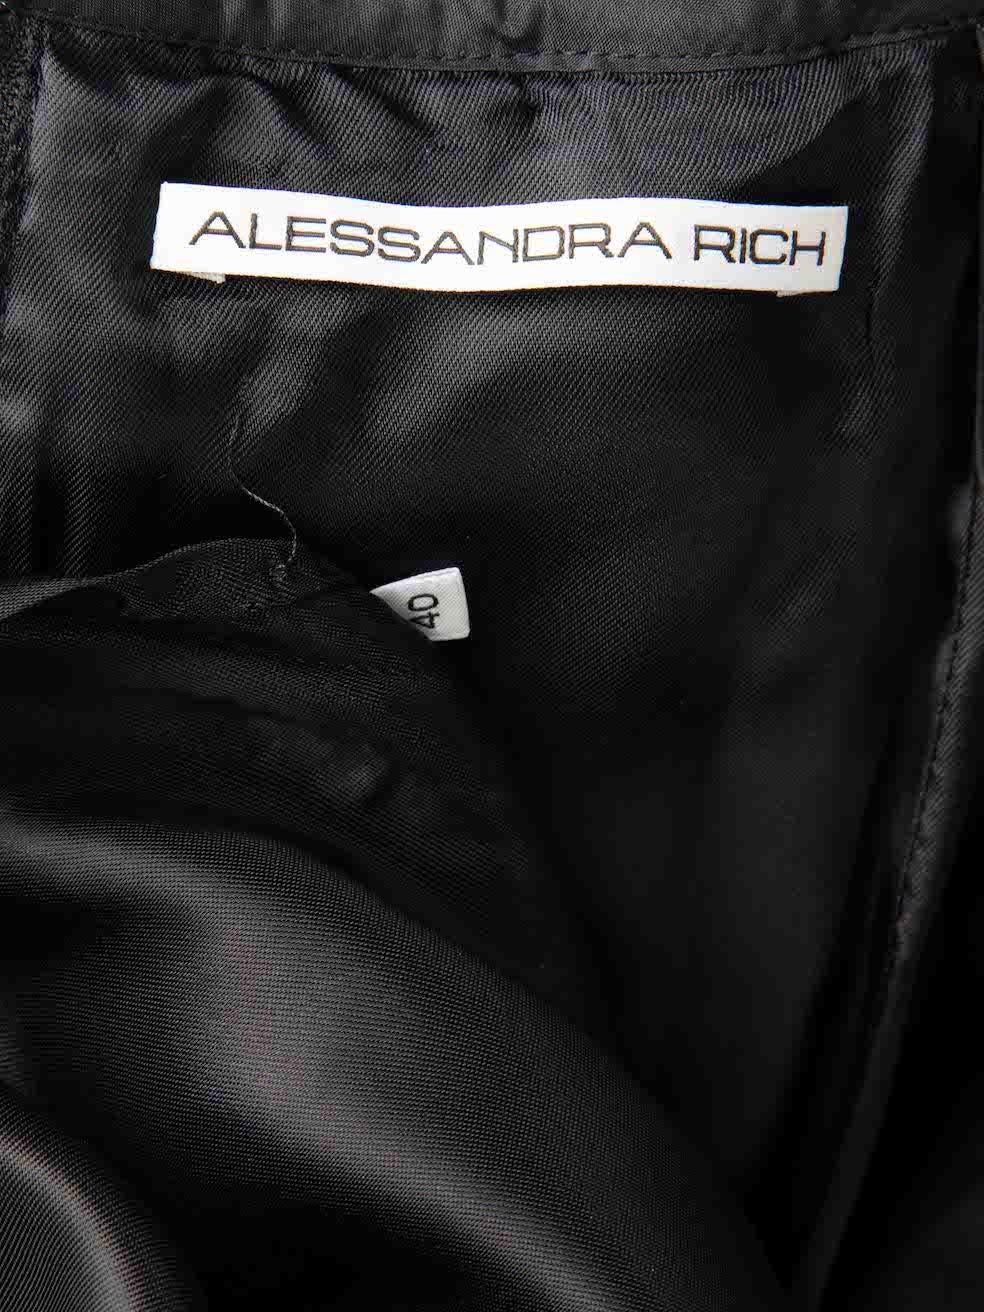 Alessandra Rich - Robe noire plissée bordée de volants - Taille S Pour femmes en vente